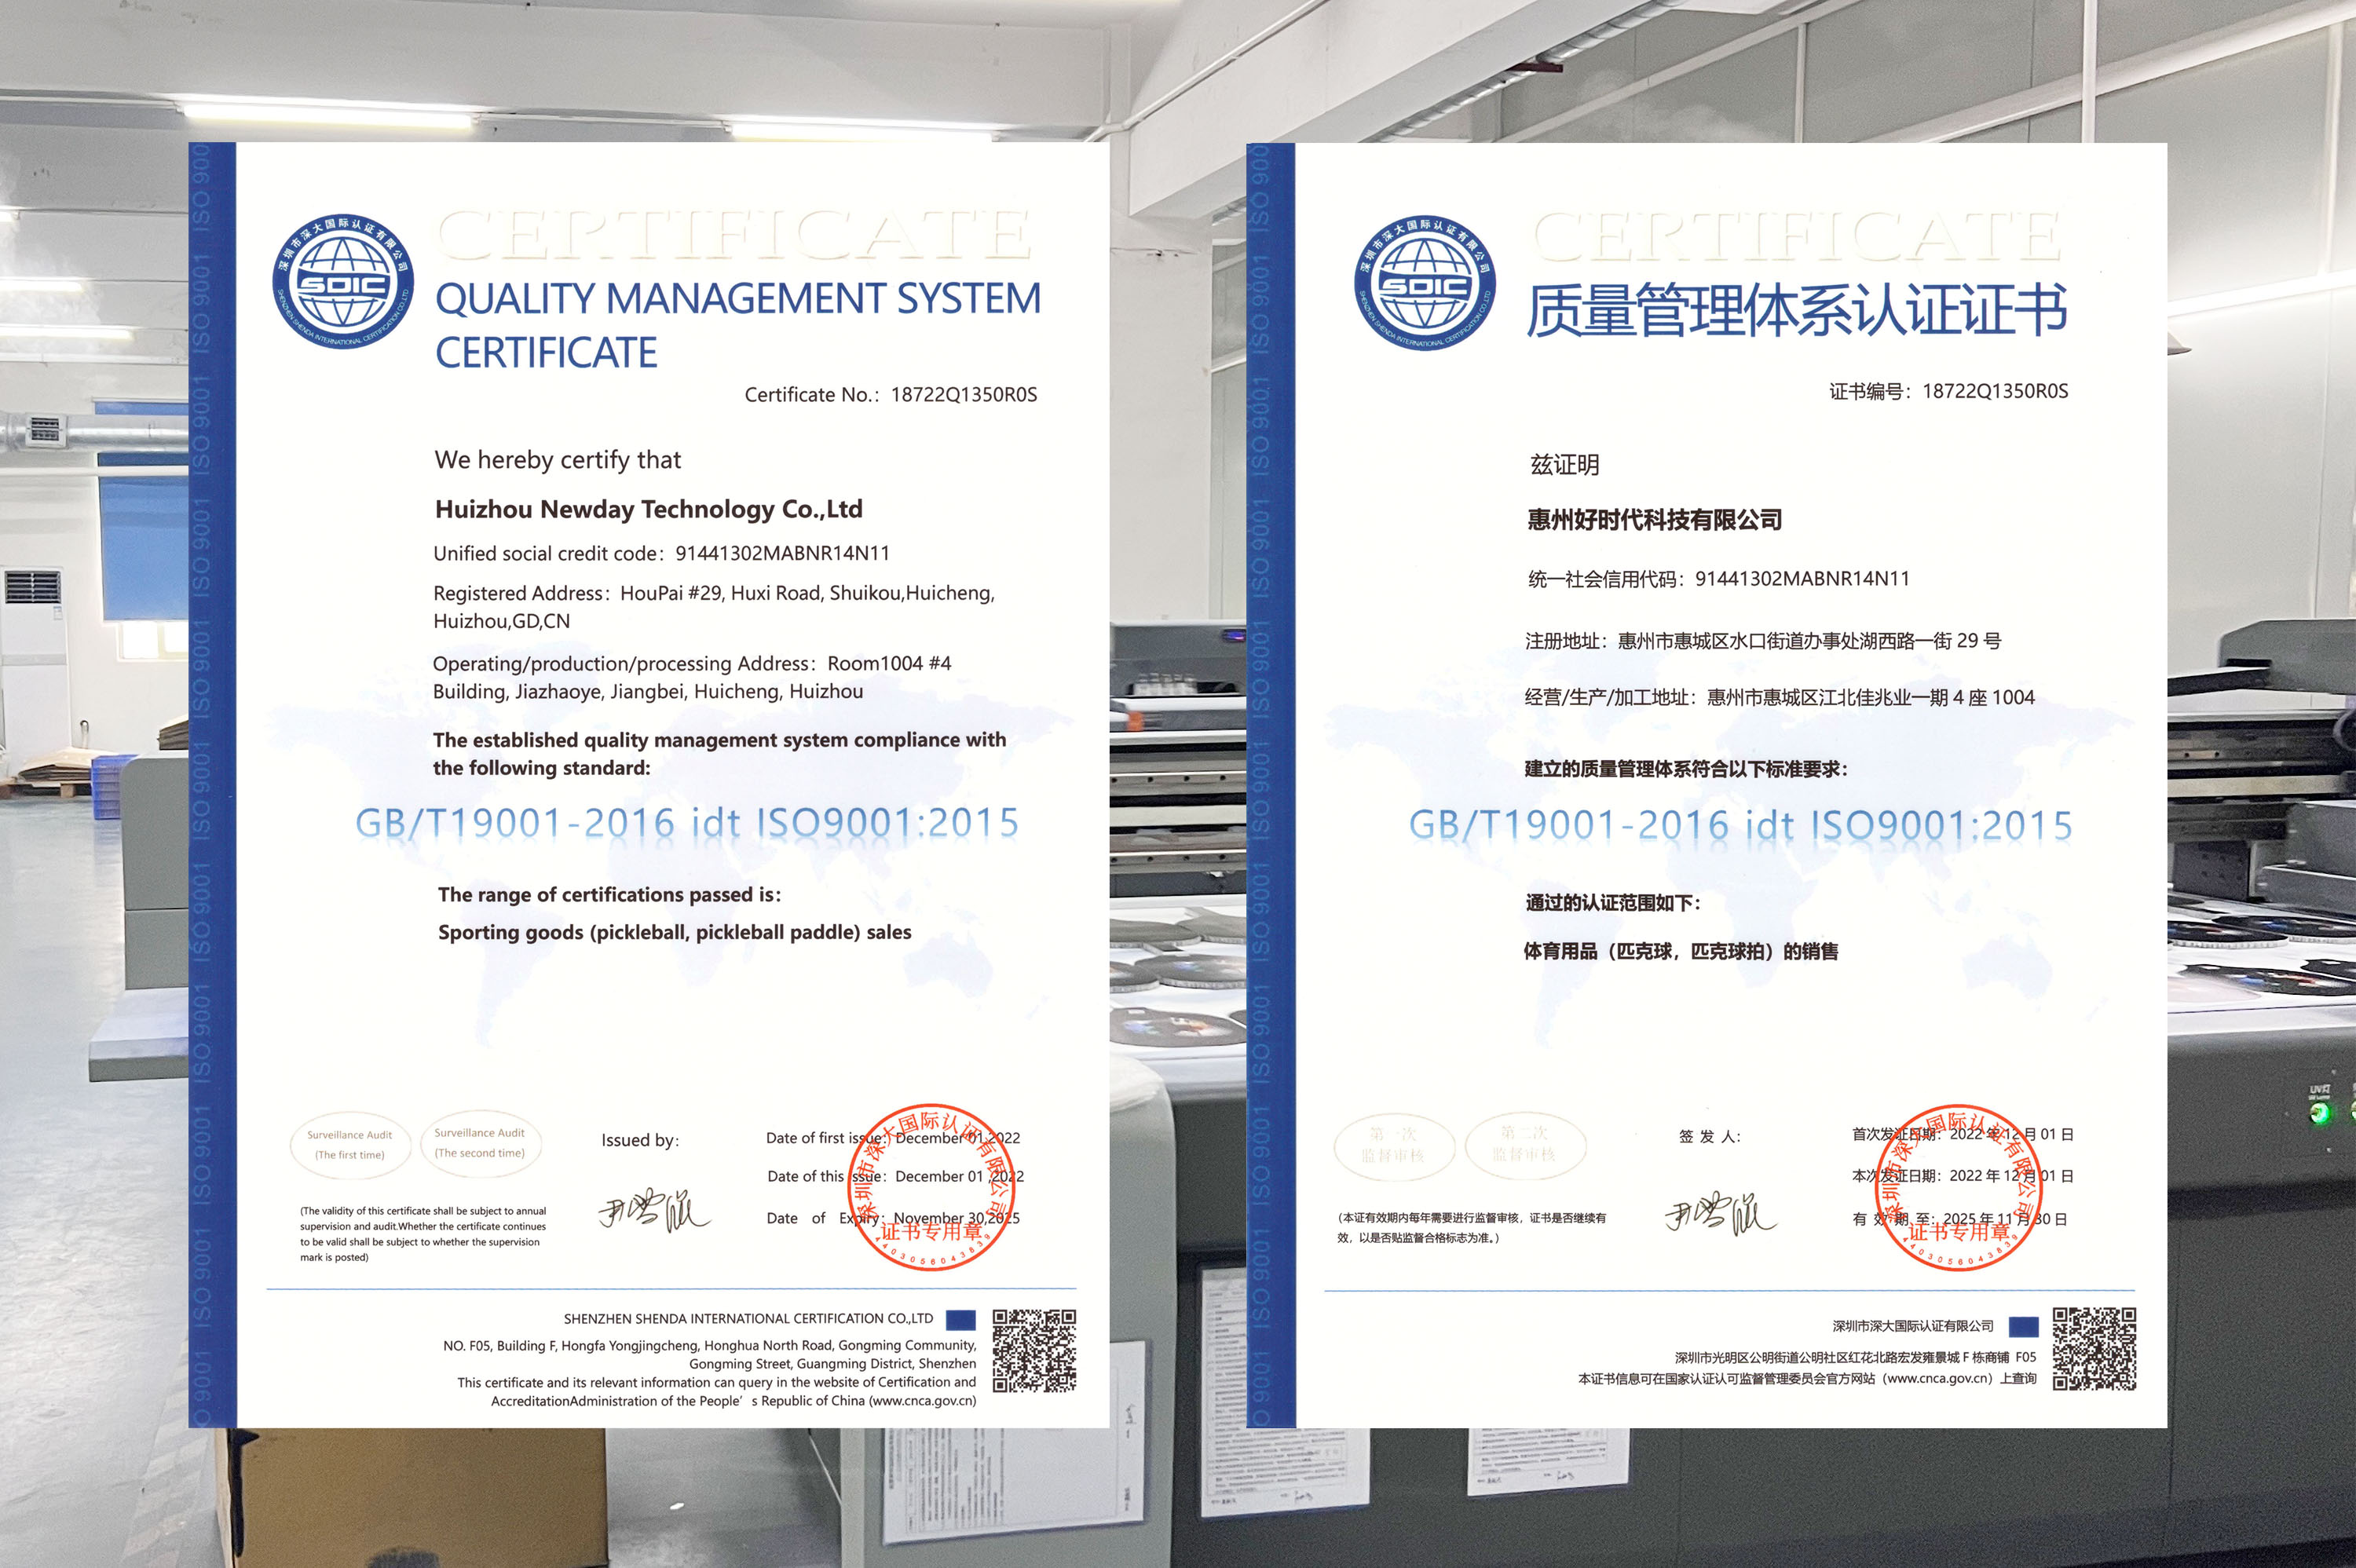 شهادة ISO9001 ، حصلنا عليها!